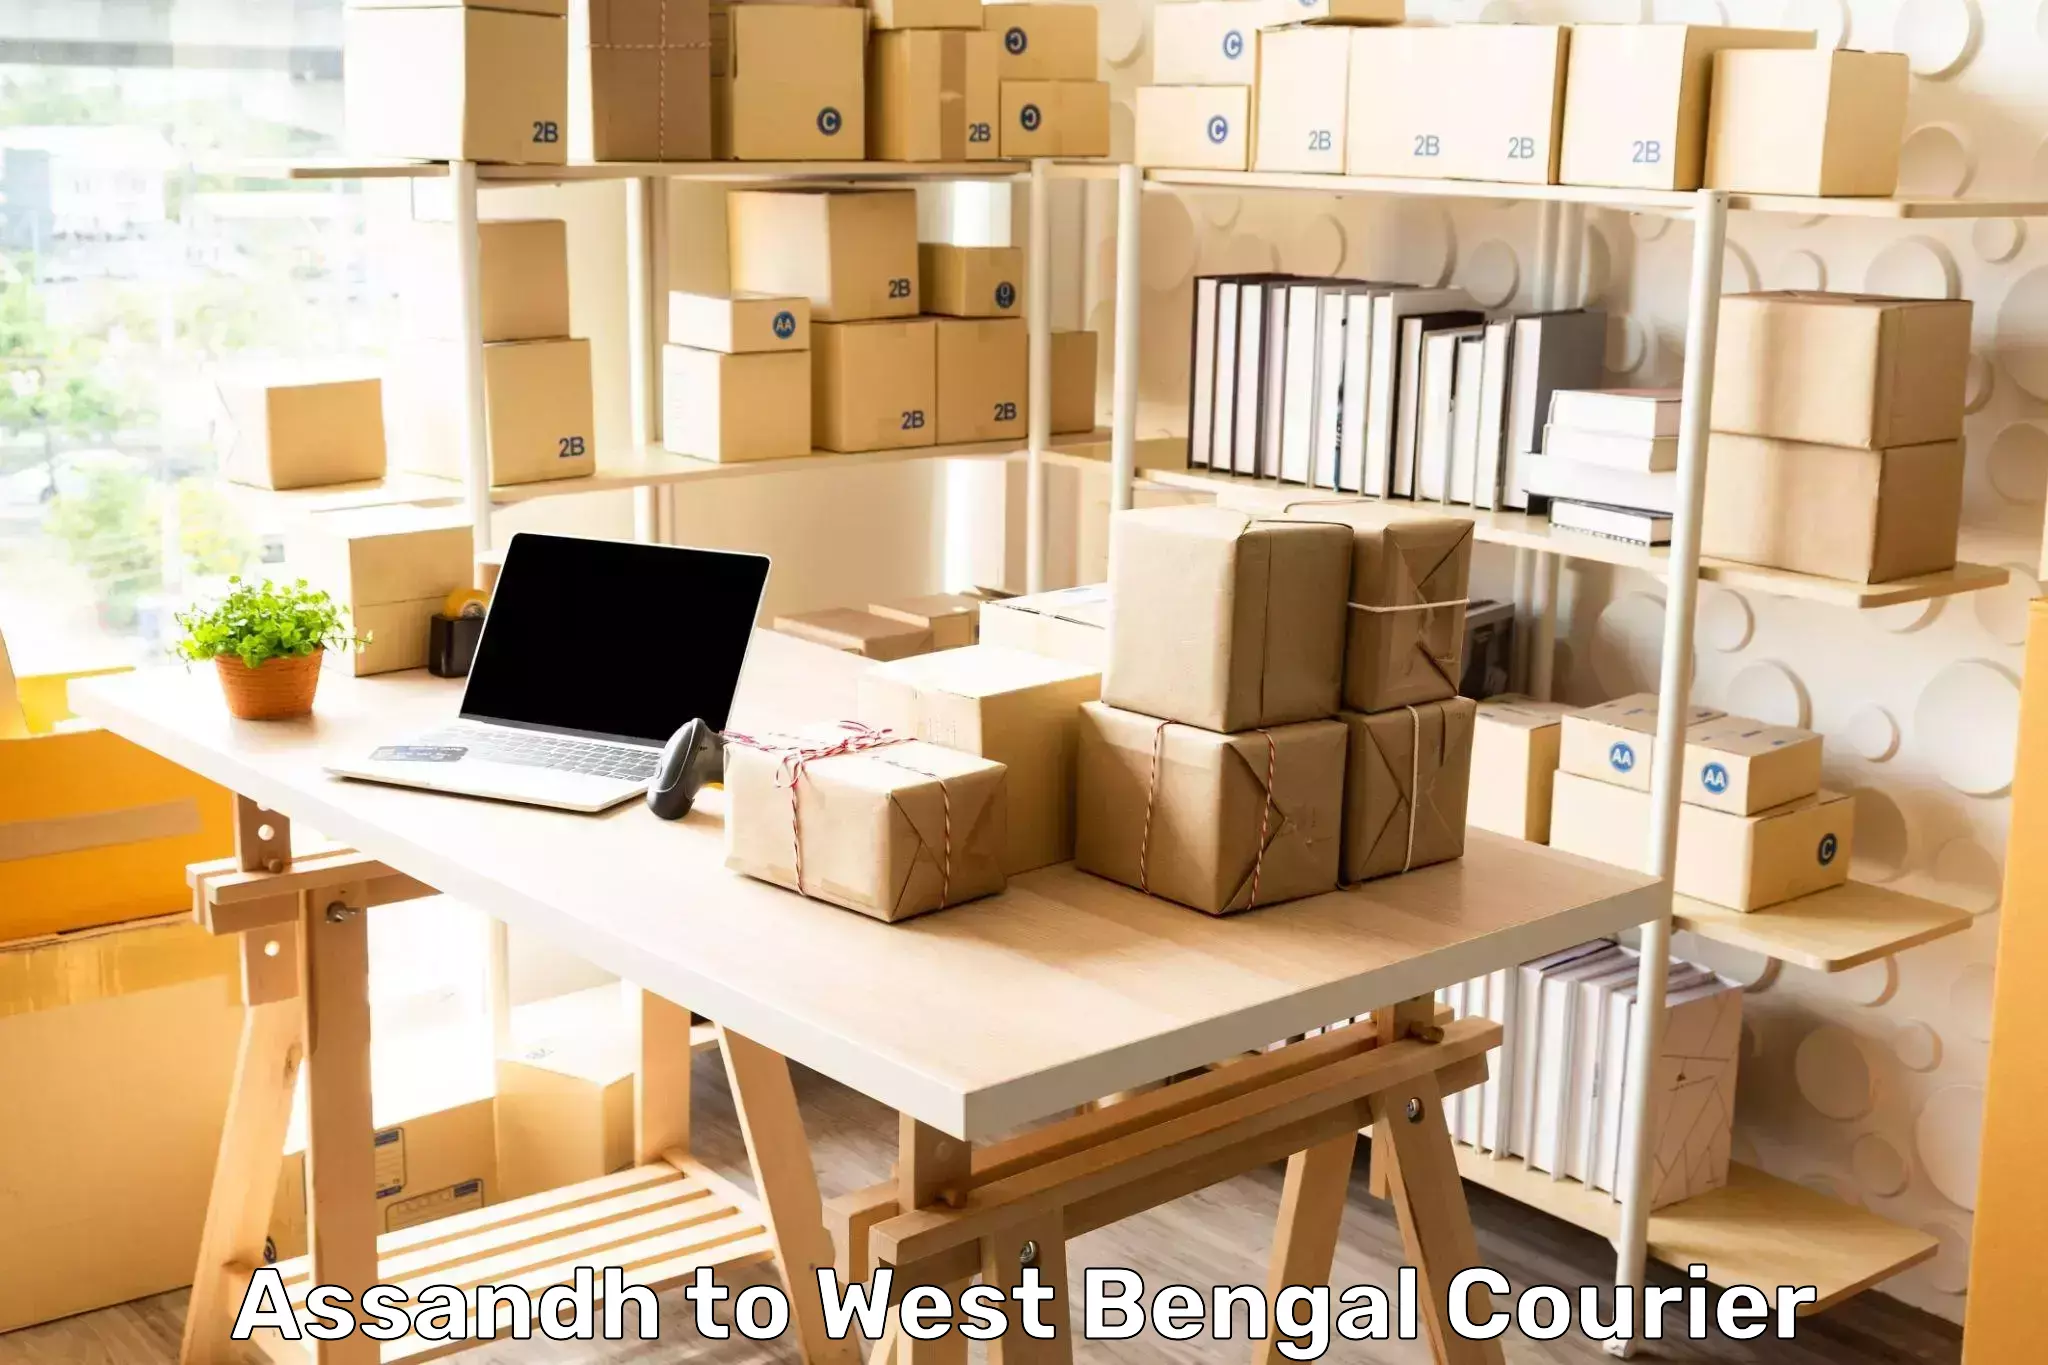 Efficient parcel service Assandh to West Bengal